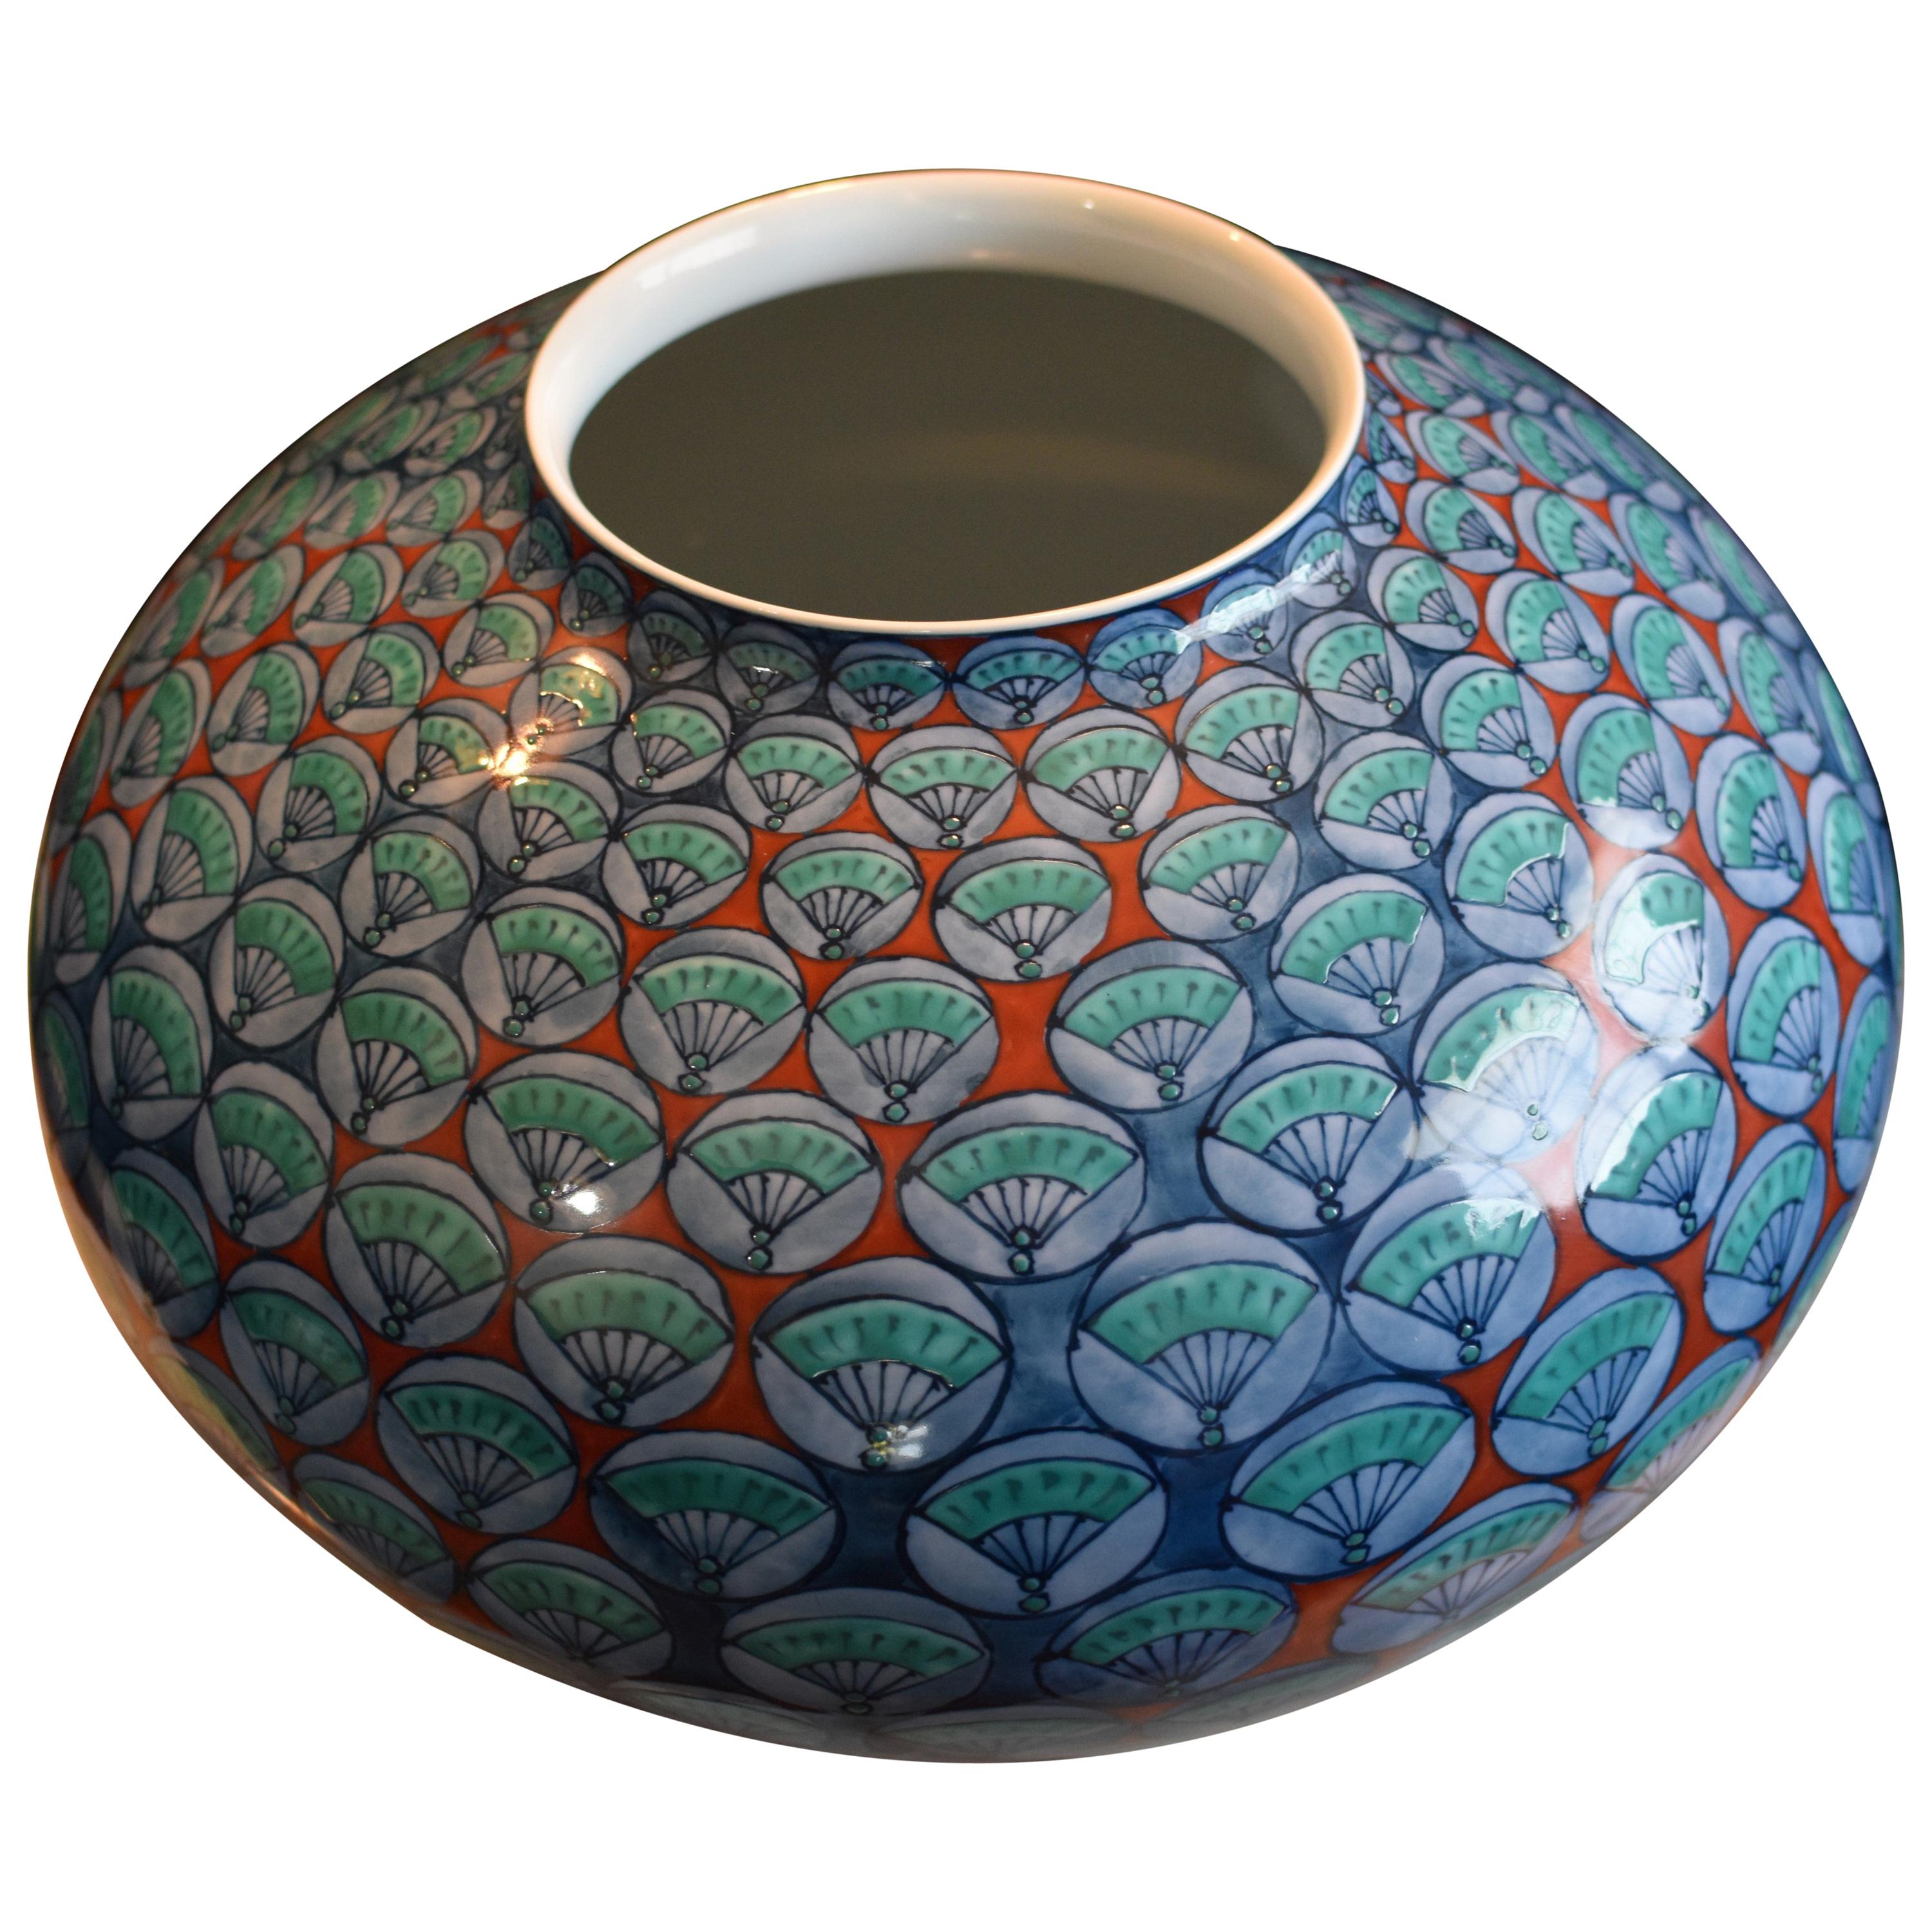 Blau-Grün-Rot-Porzellan-Vase von zeitgenössischem japanischem Meisterkünstler